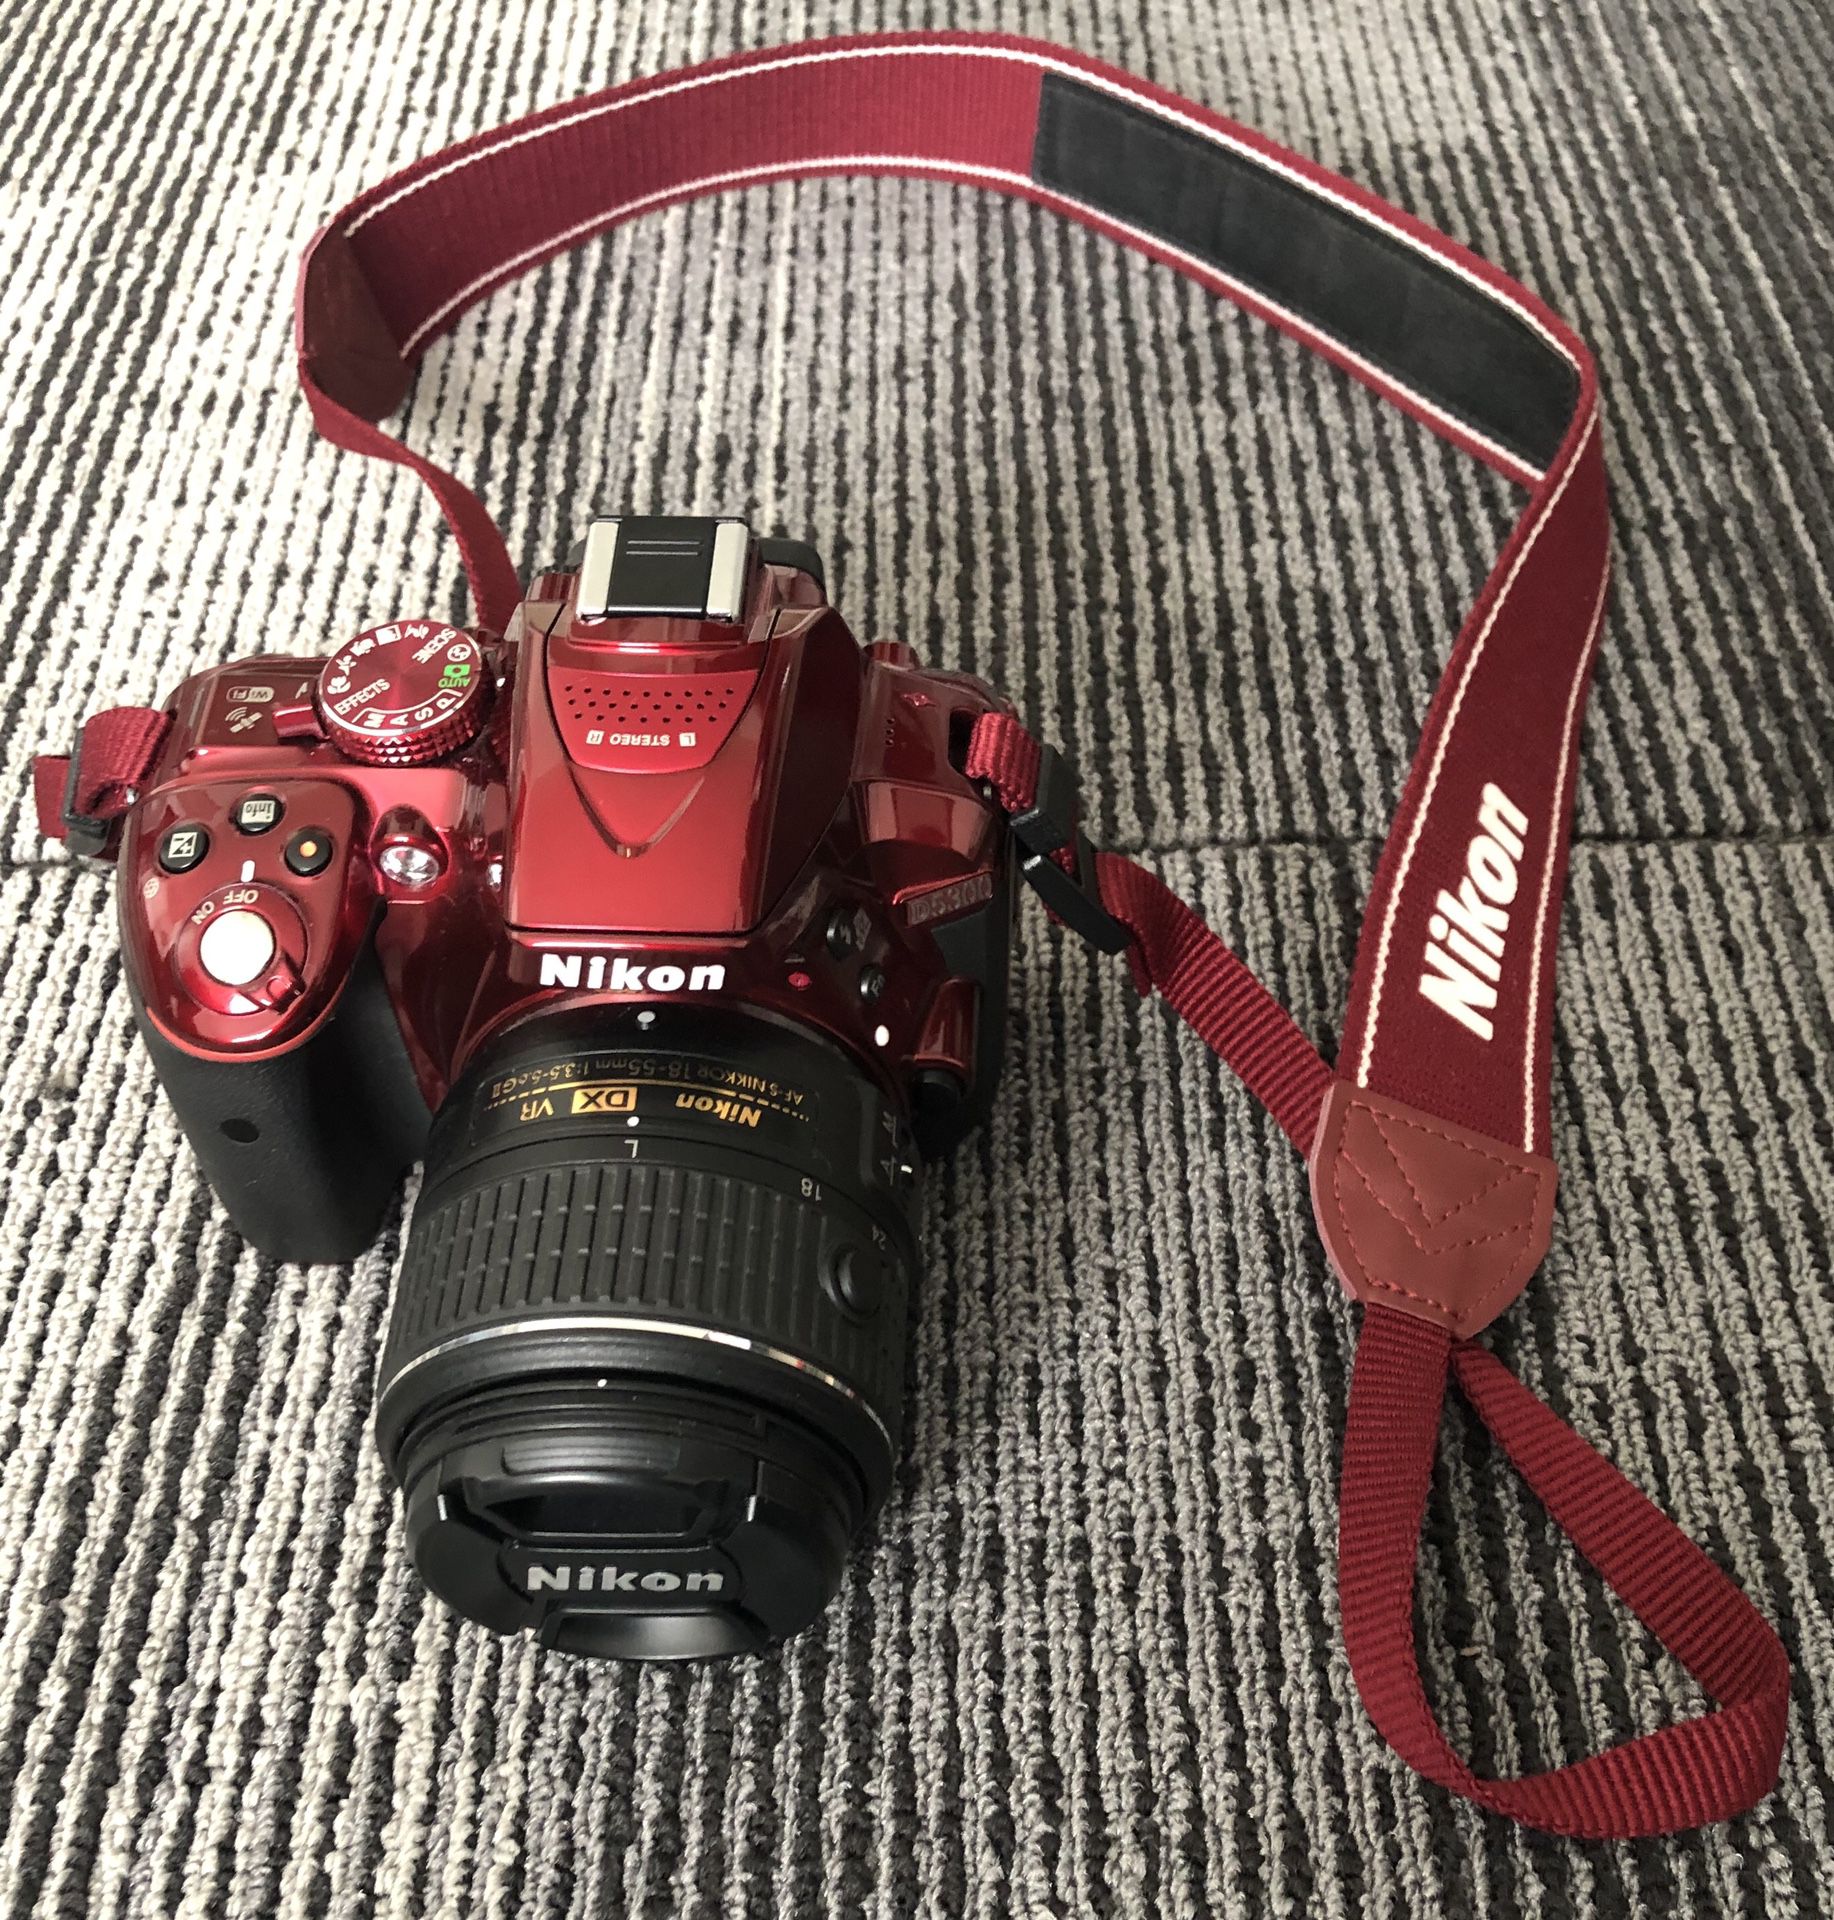 Nikon D5300 DX-Format Digital SLR Camera Kit w/ 18-55mm DX VR II Lens - Red